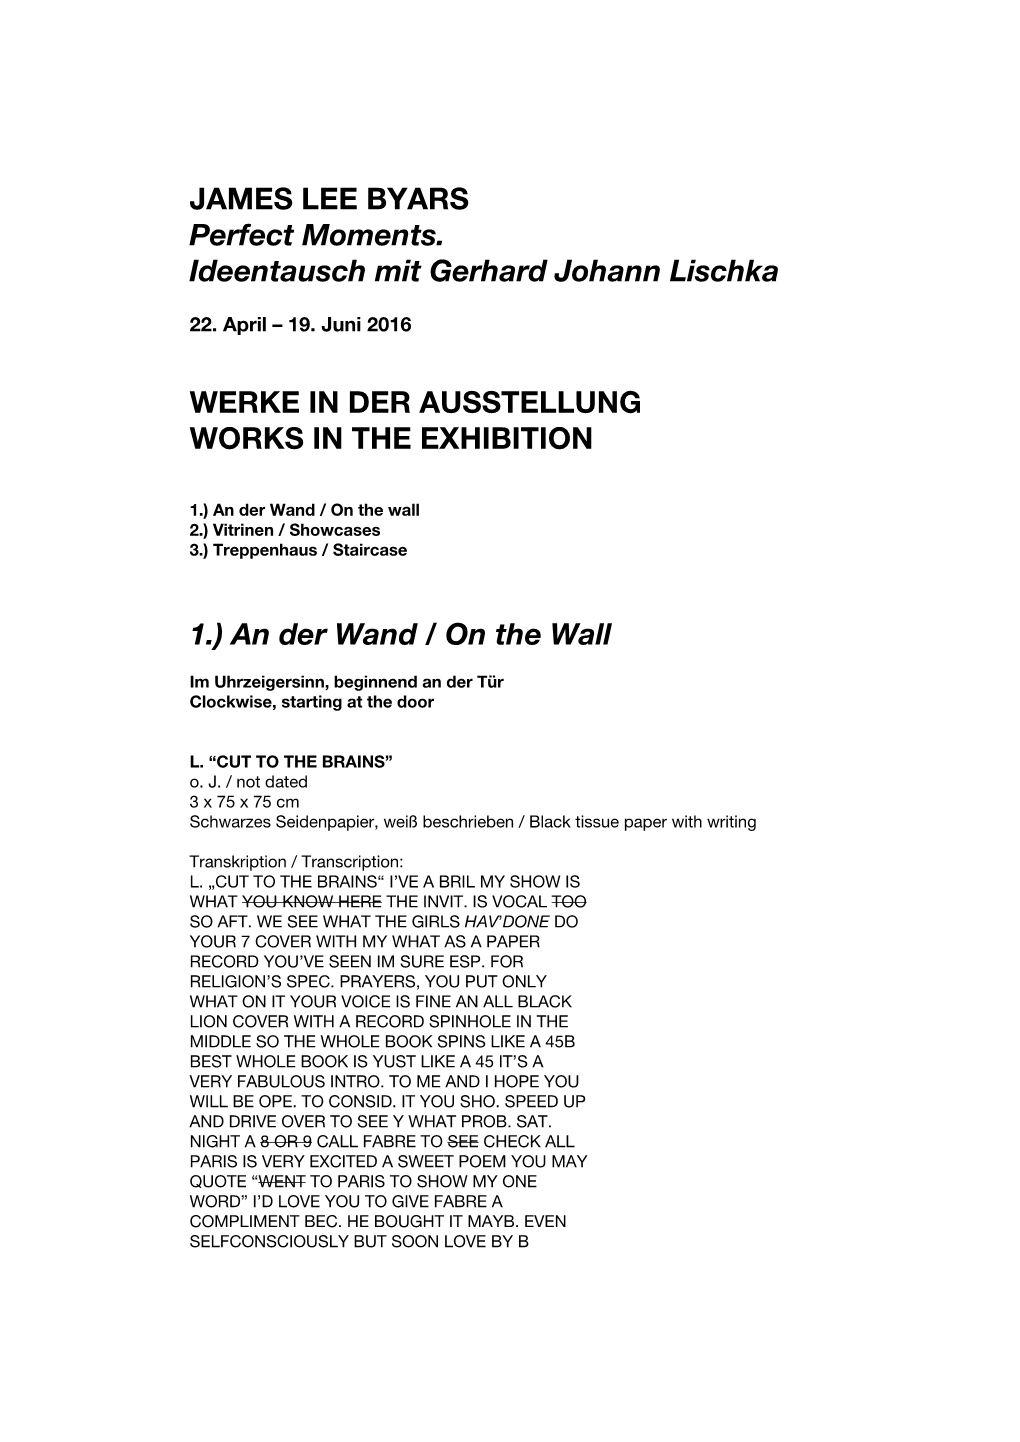 JAMES LEE BYARS Perfect Moments. Ideentausch Mit Gerhard Johann Lischka WERKE in DER AUSSTELLUNG WORKS in the EXHIBITION